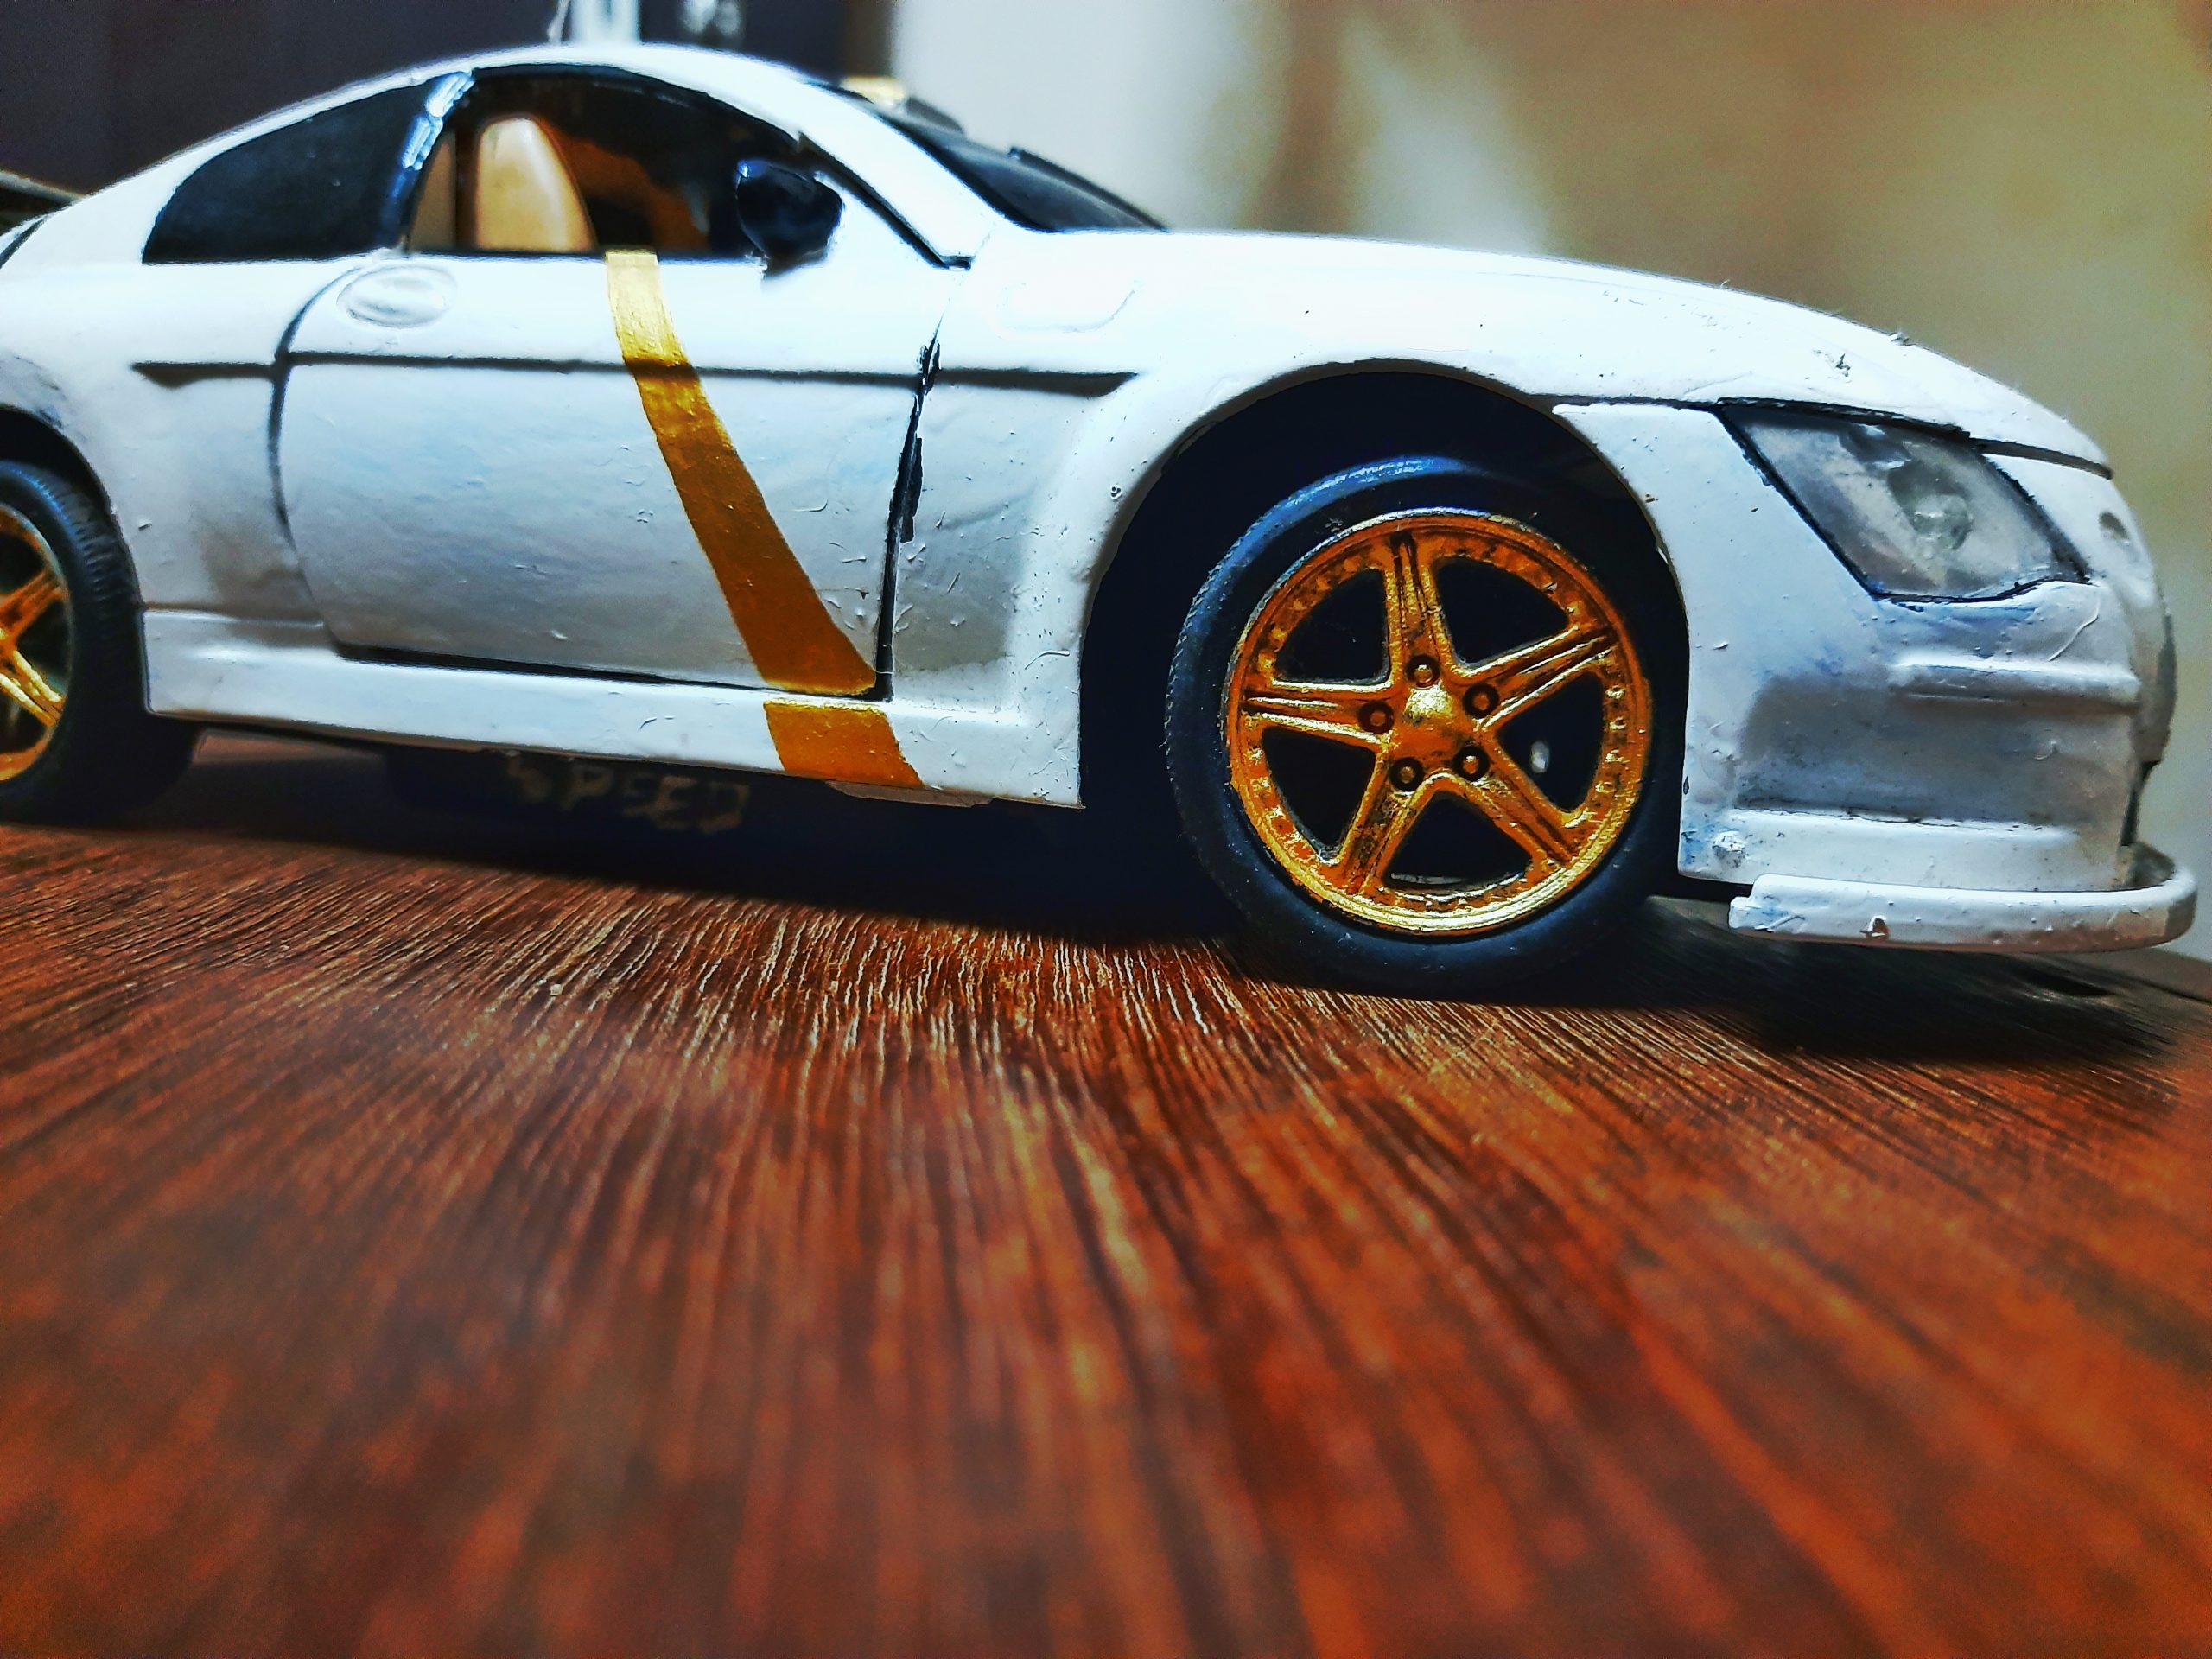 A toy car